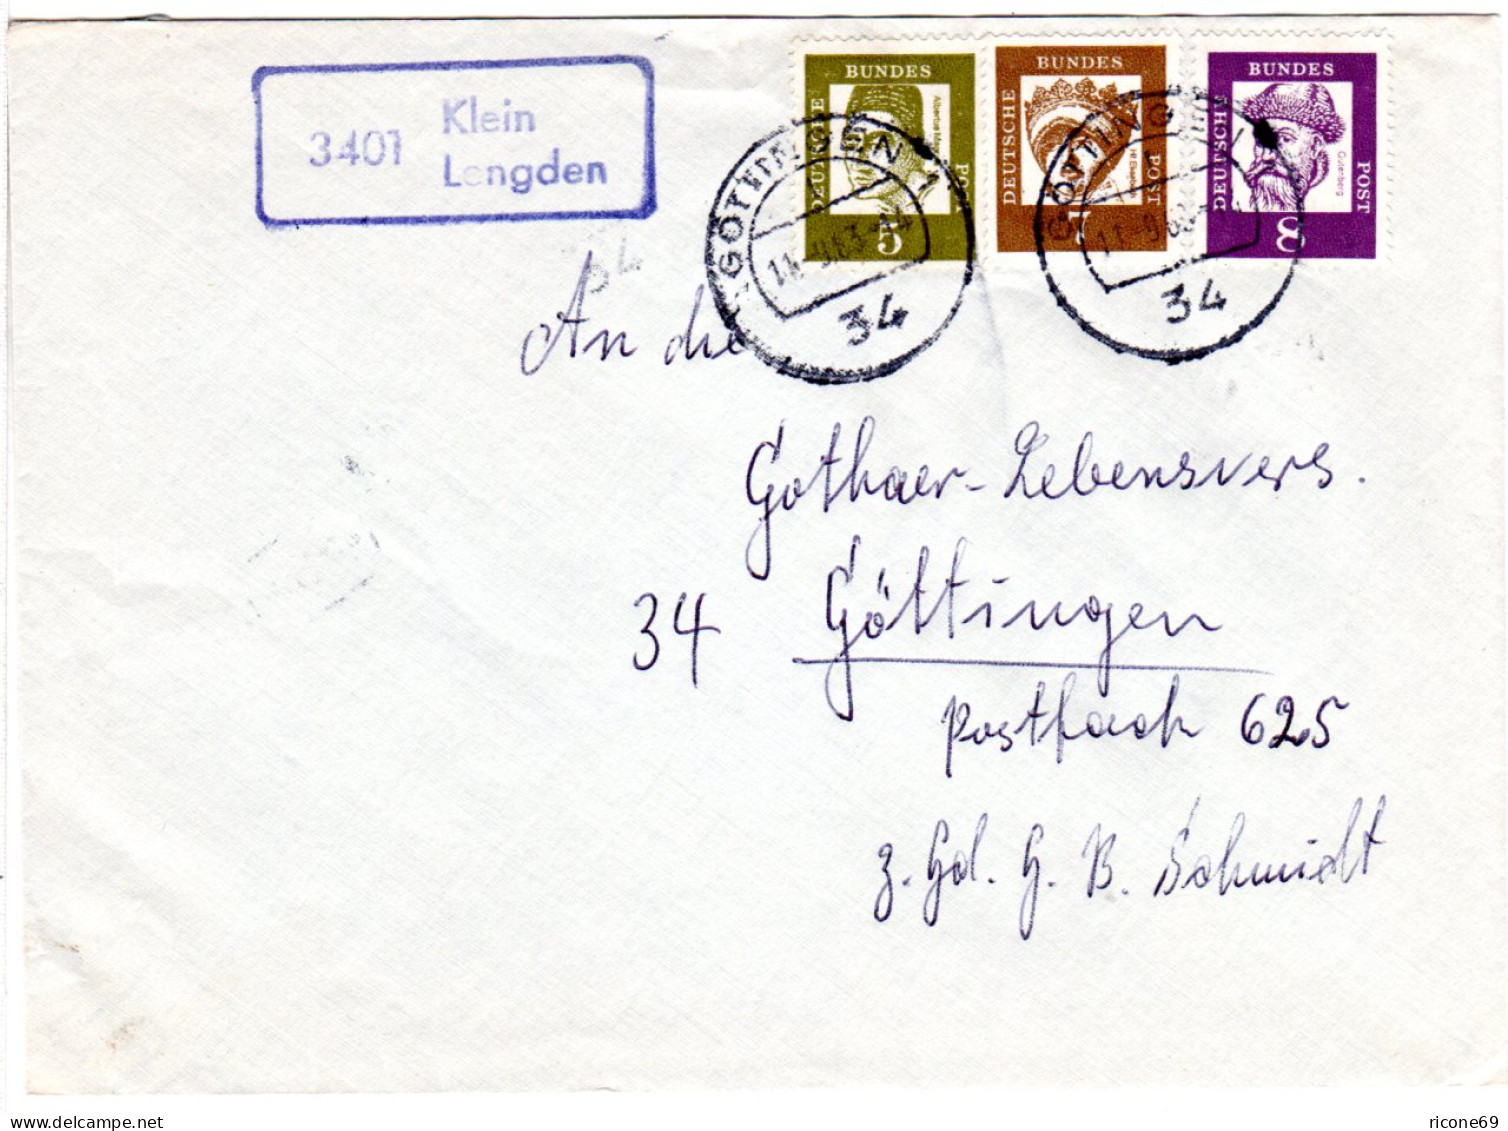 BRD 1963, Landpoststpl. 3401 Klein Lengden Auf Brief M. 5+7+8 Pf Gest. Göttingen - Covers & Documents